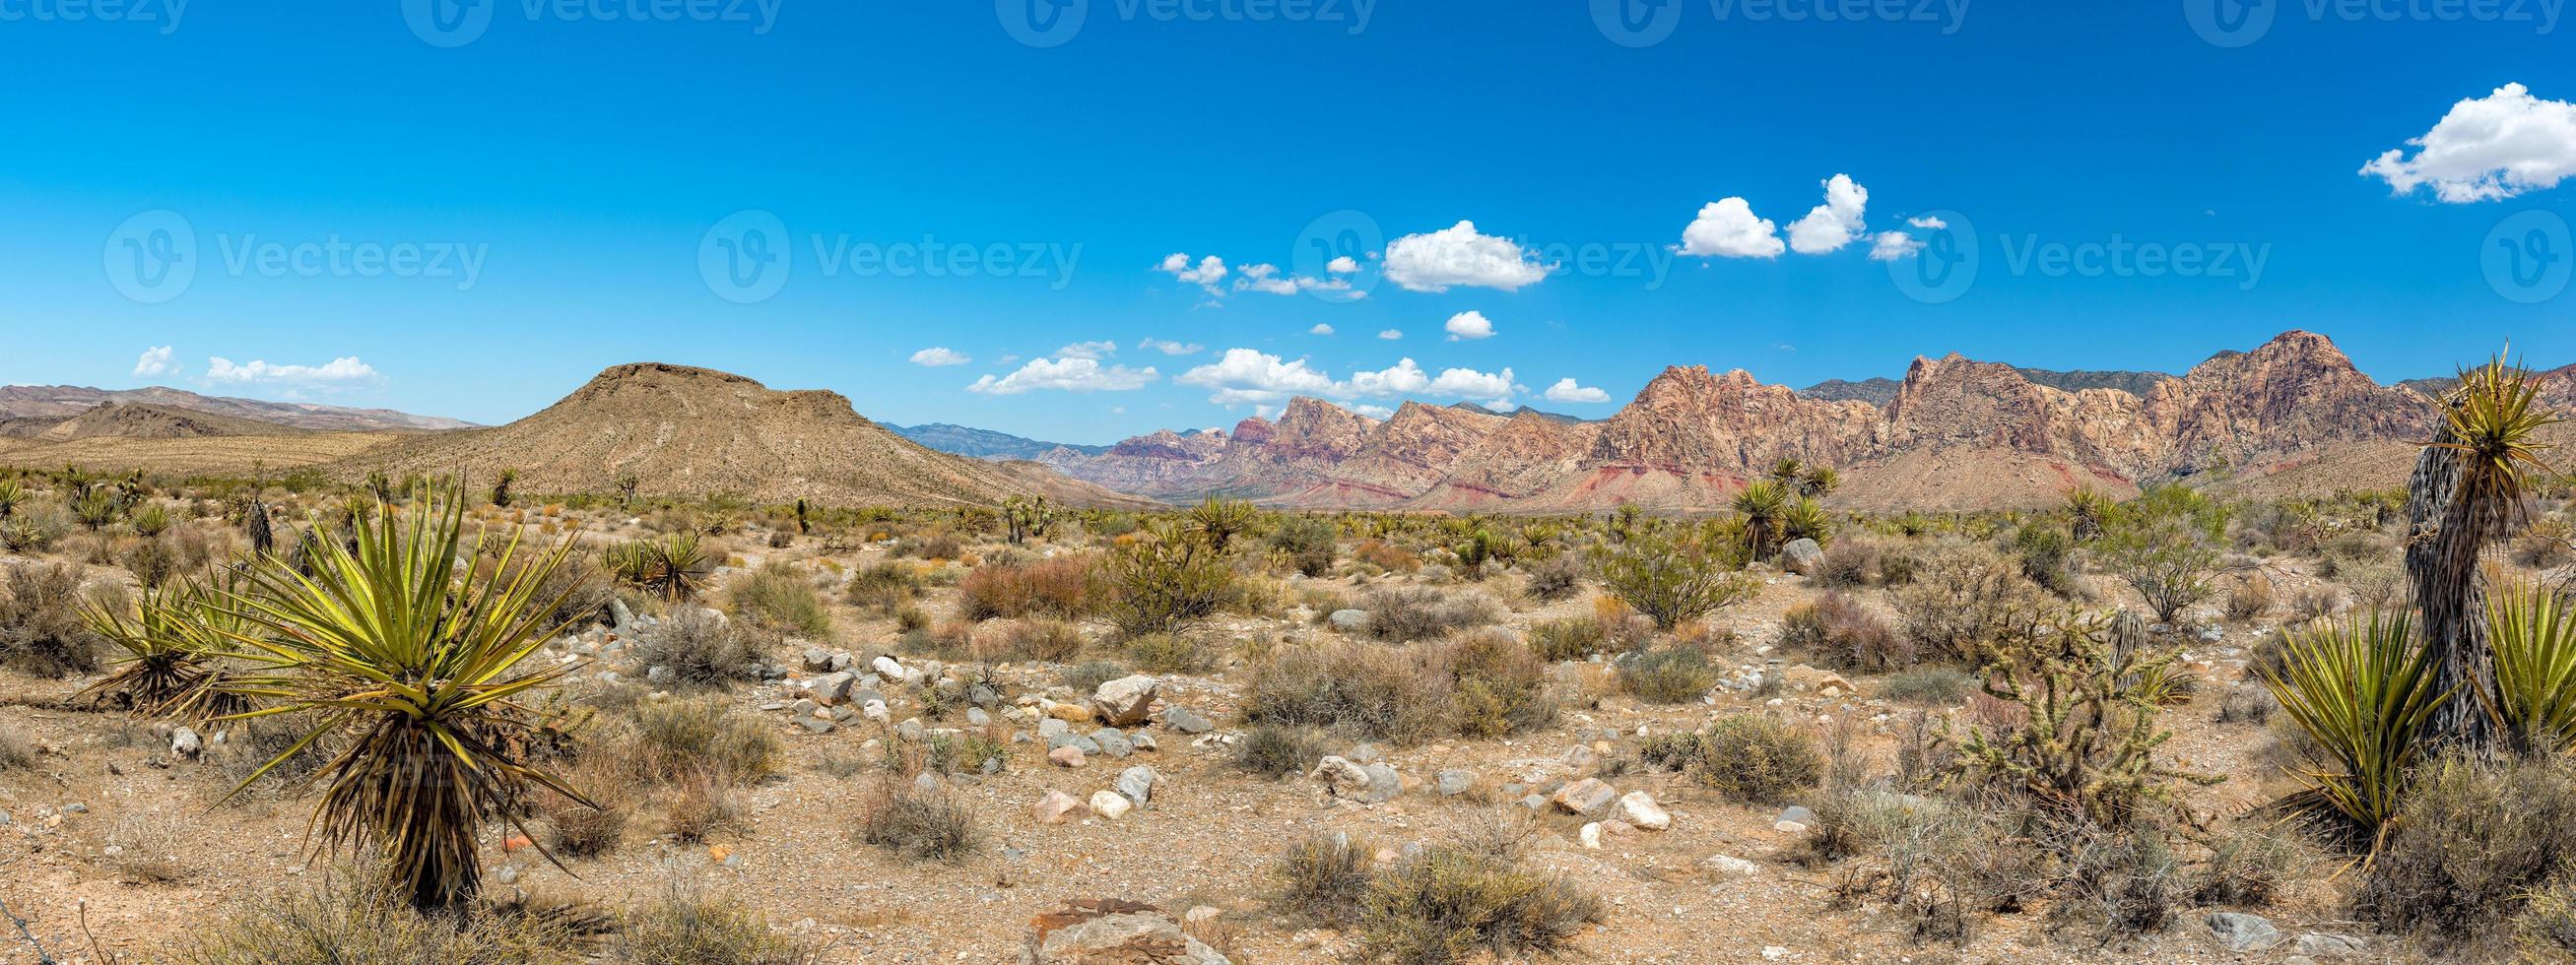 vista da paisagem do arizona filme far oeste foto